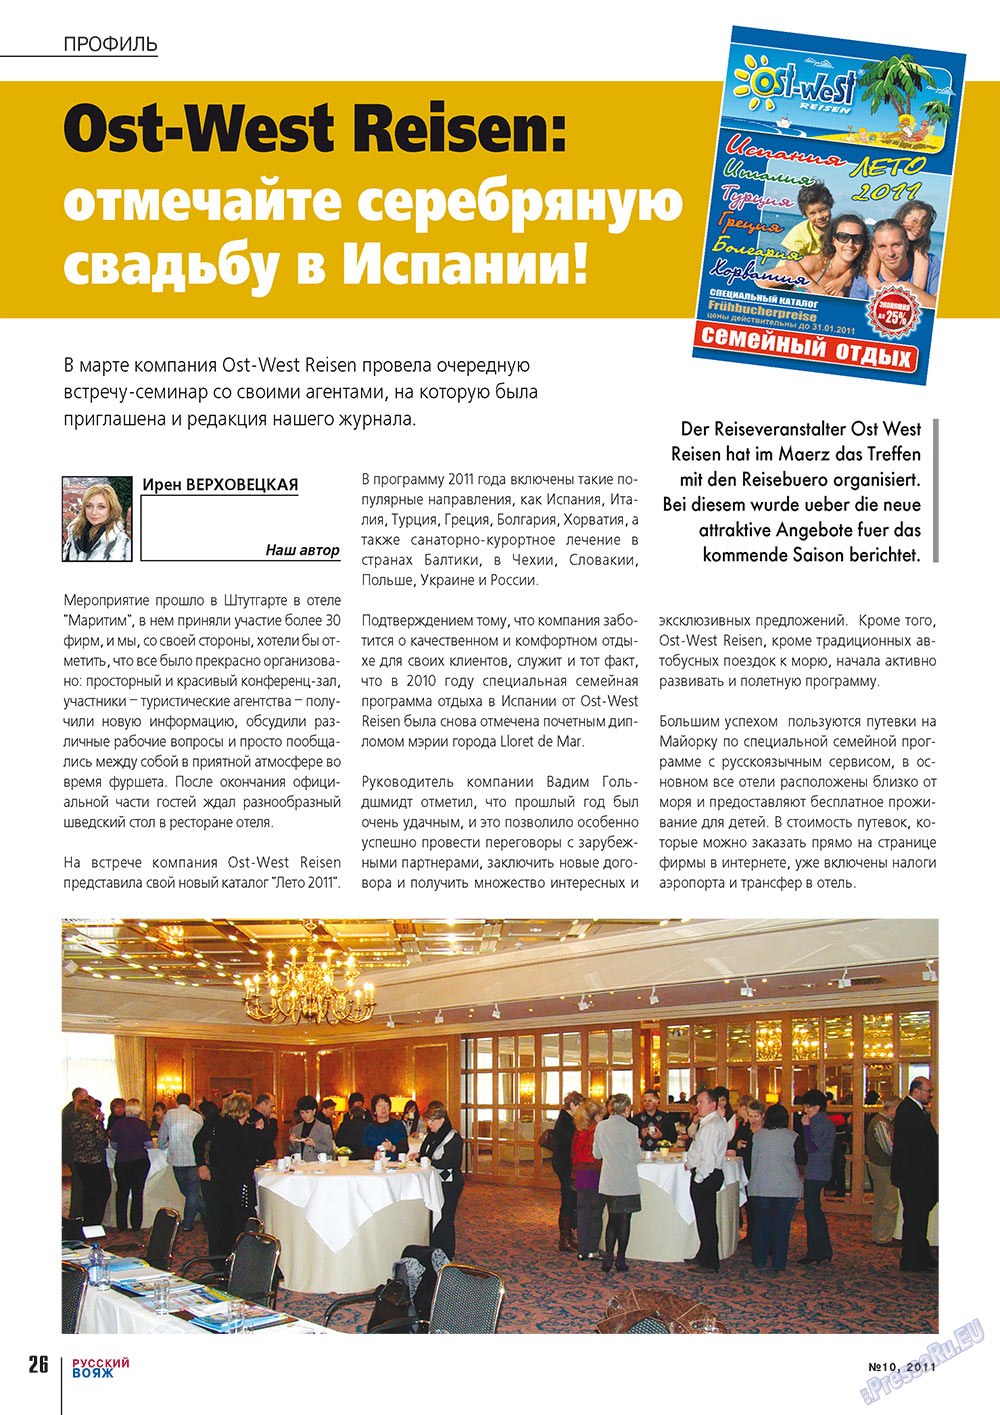 Русский вояж (журнал). 2011 год, номер 10, стр. 26